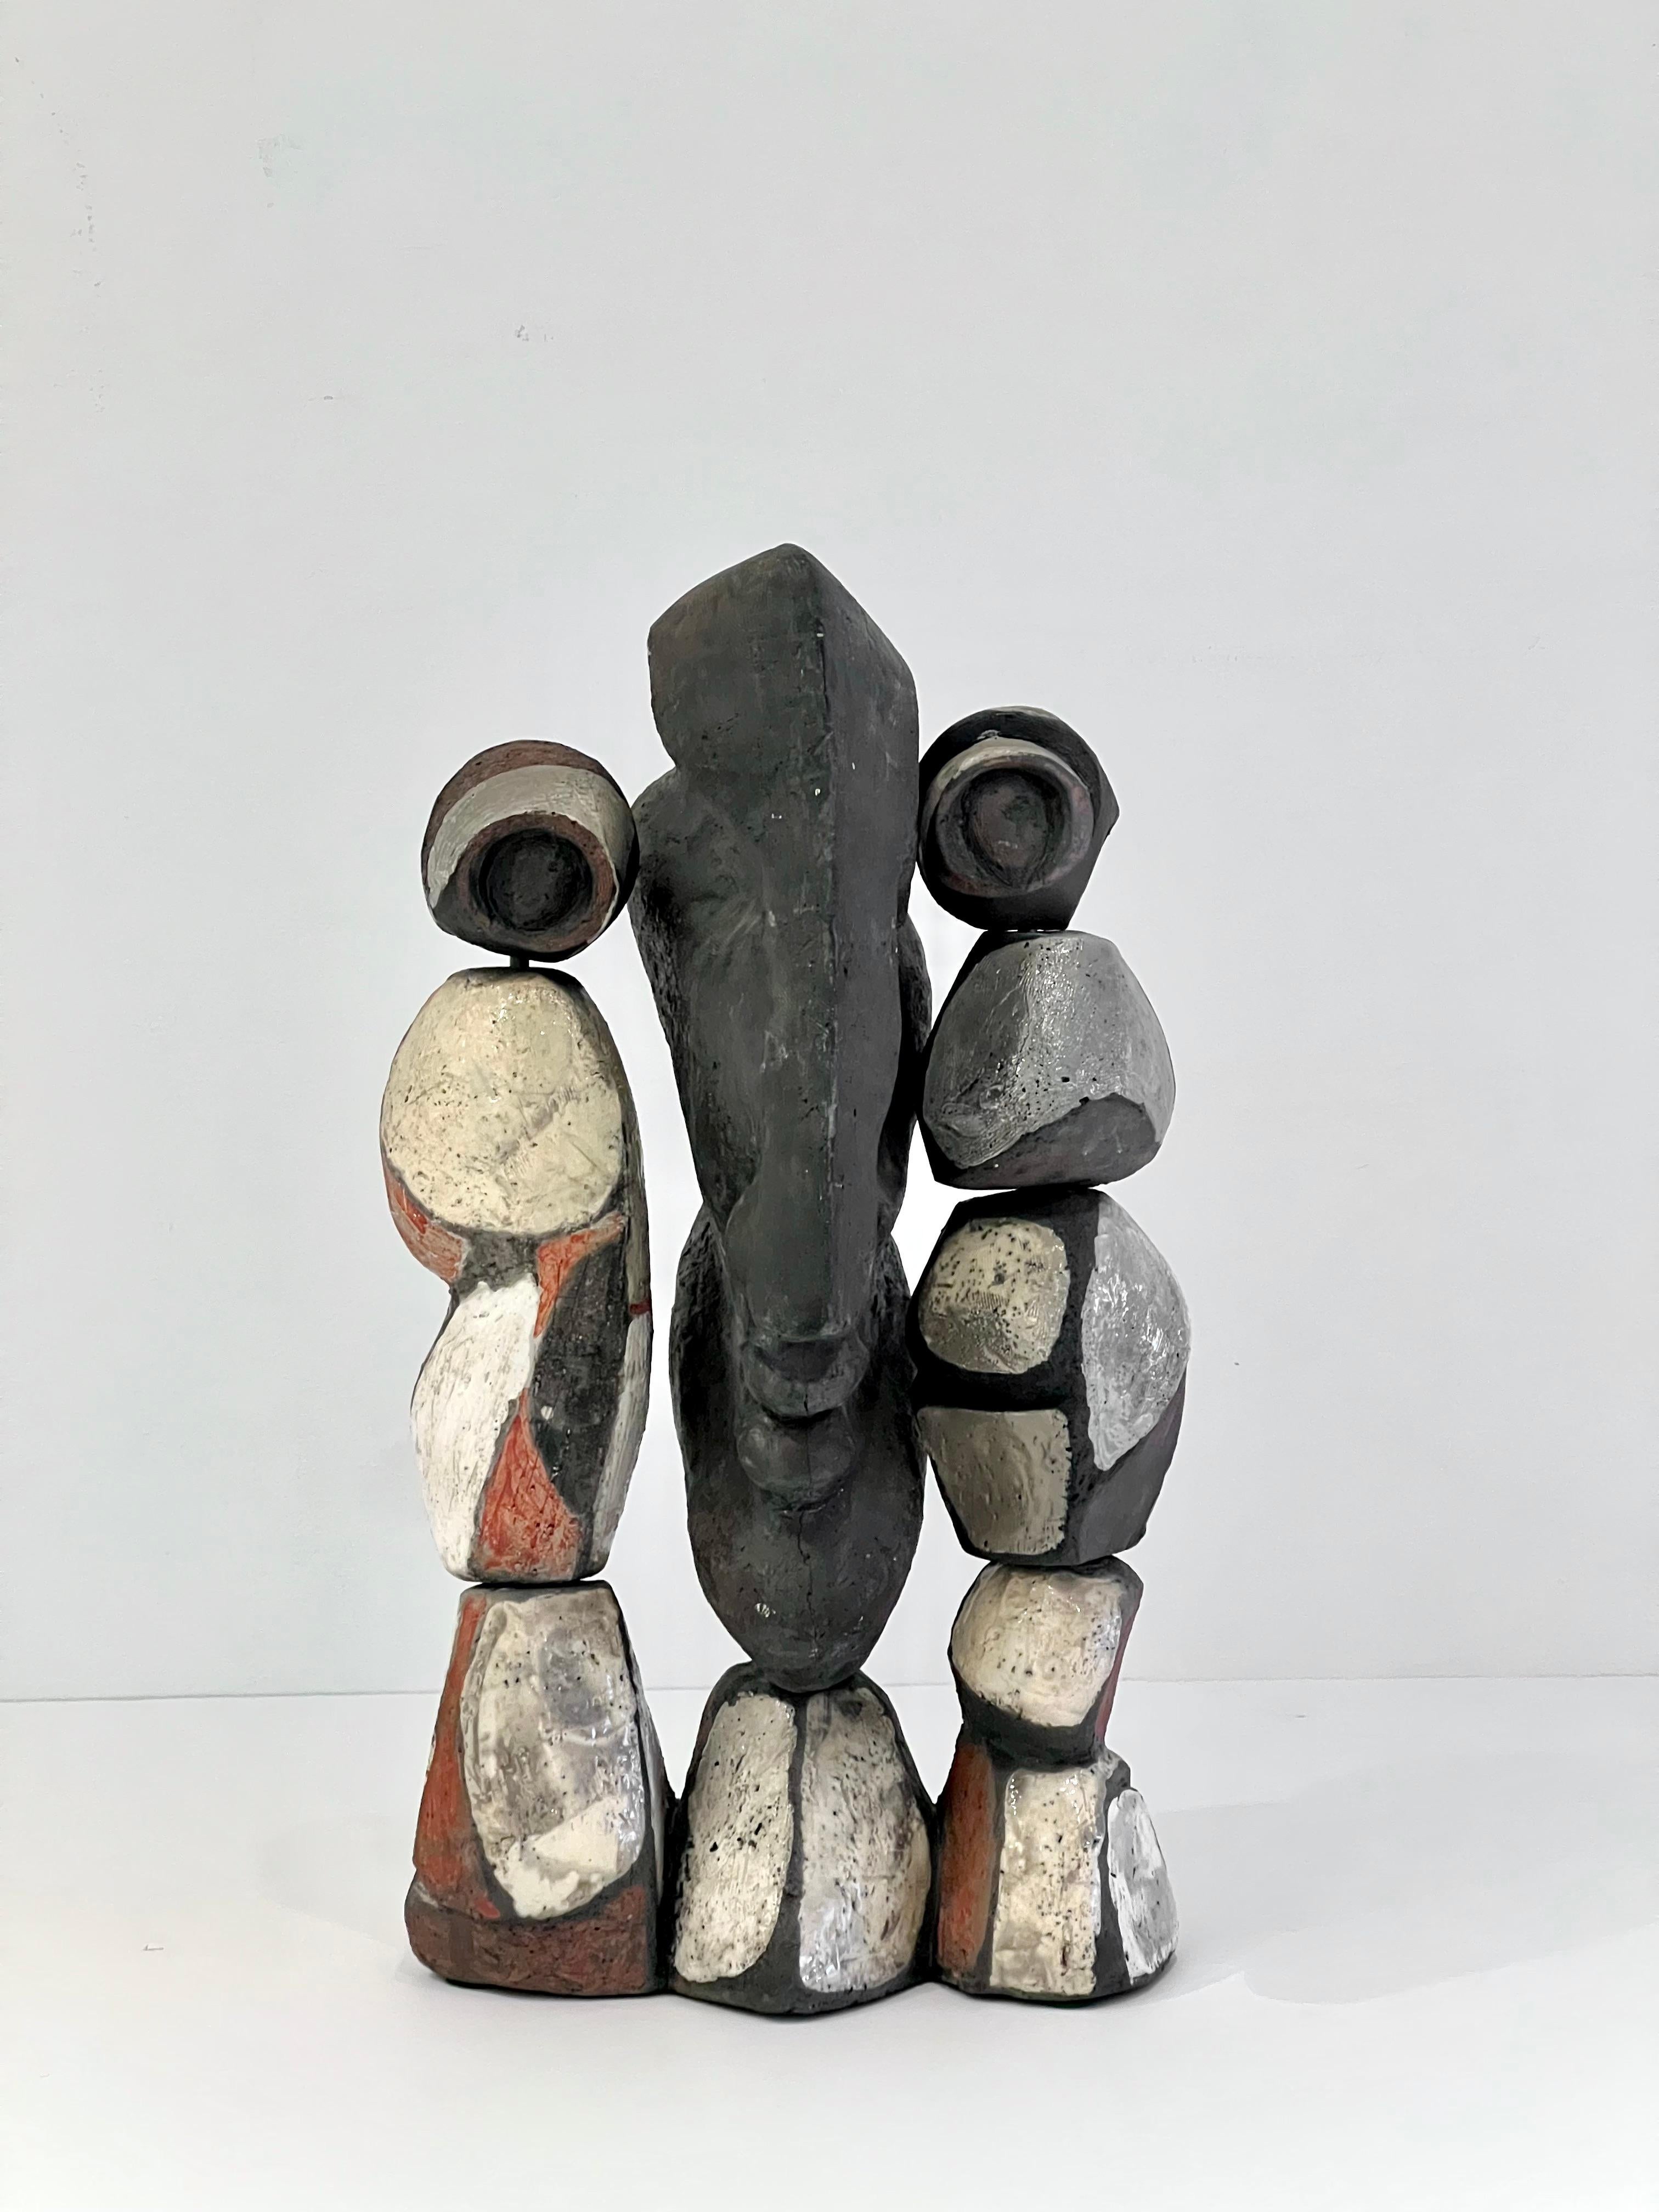 Sculpture figurative abstraite en céramique de Roger Capron, France, années 1970.
Bien qu'il soit principalement connu pour ses tables, Roger Capron a créé d'étonnantes sculptures plus tard dans sa vie.